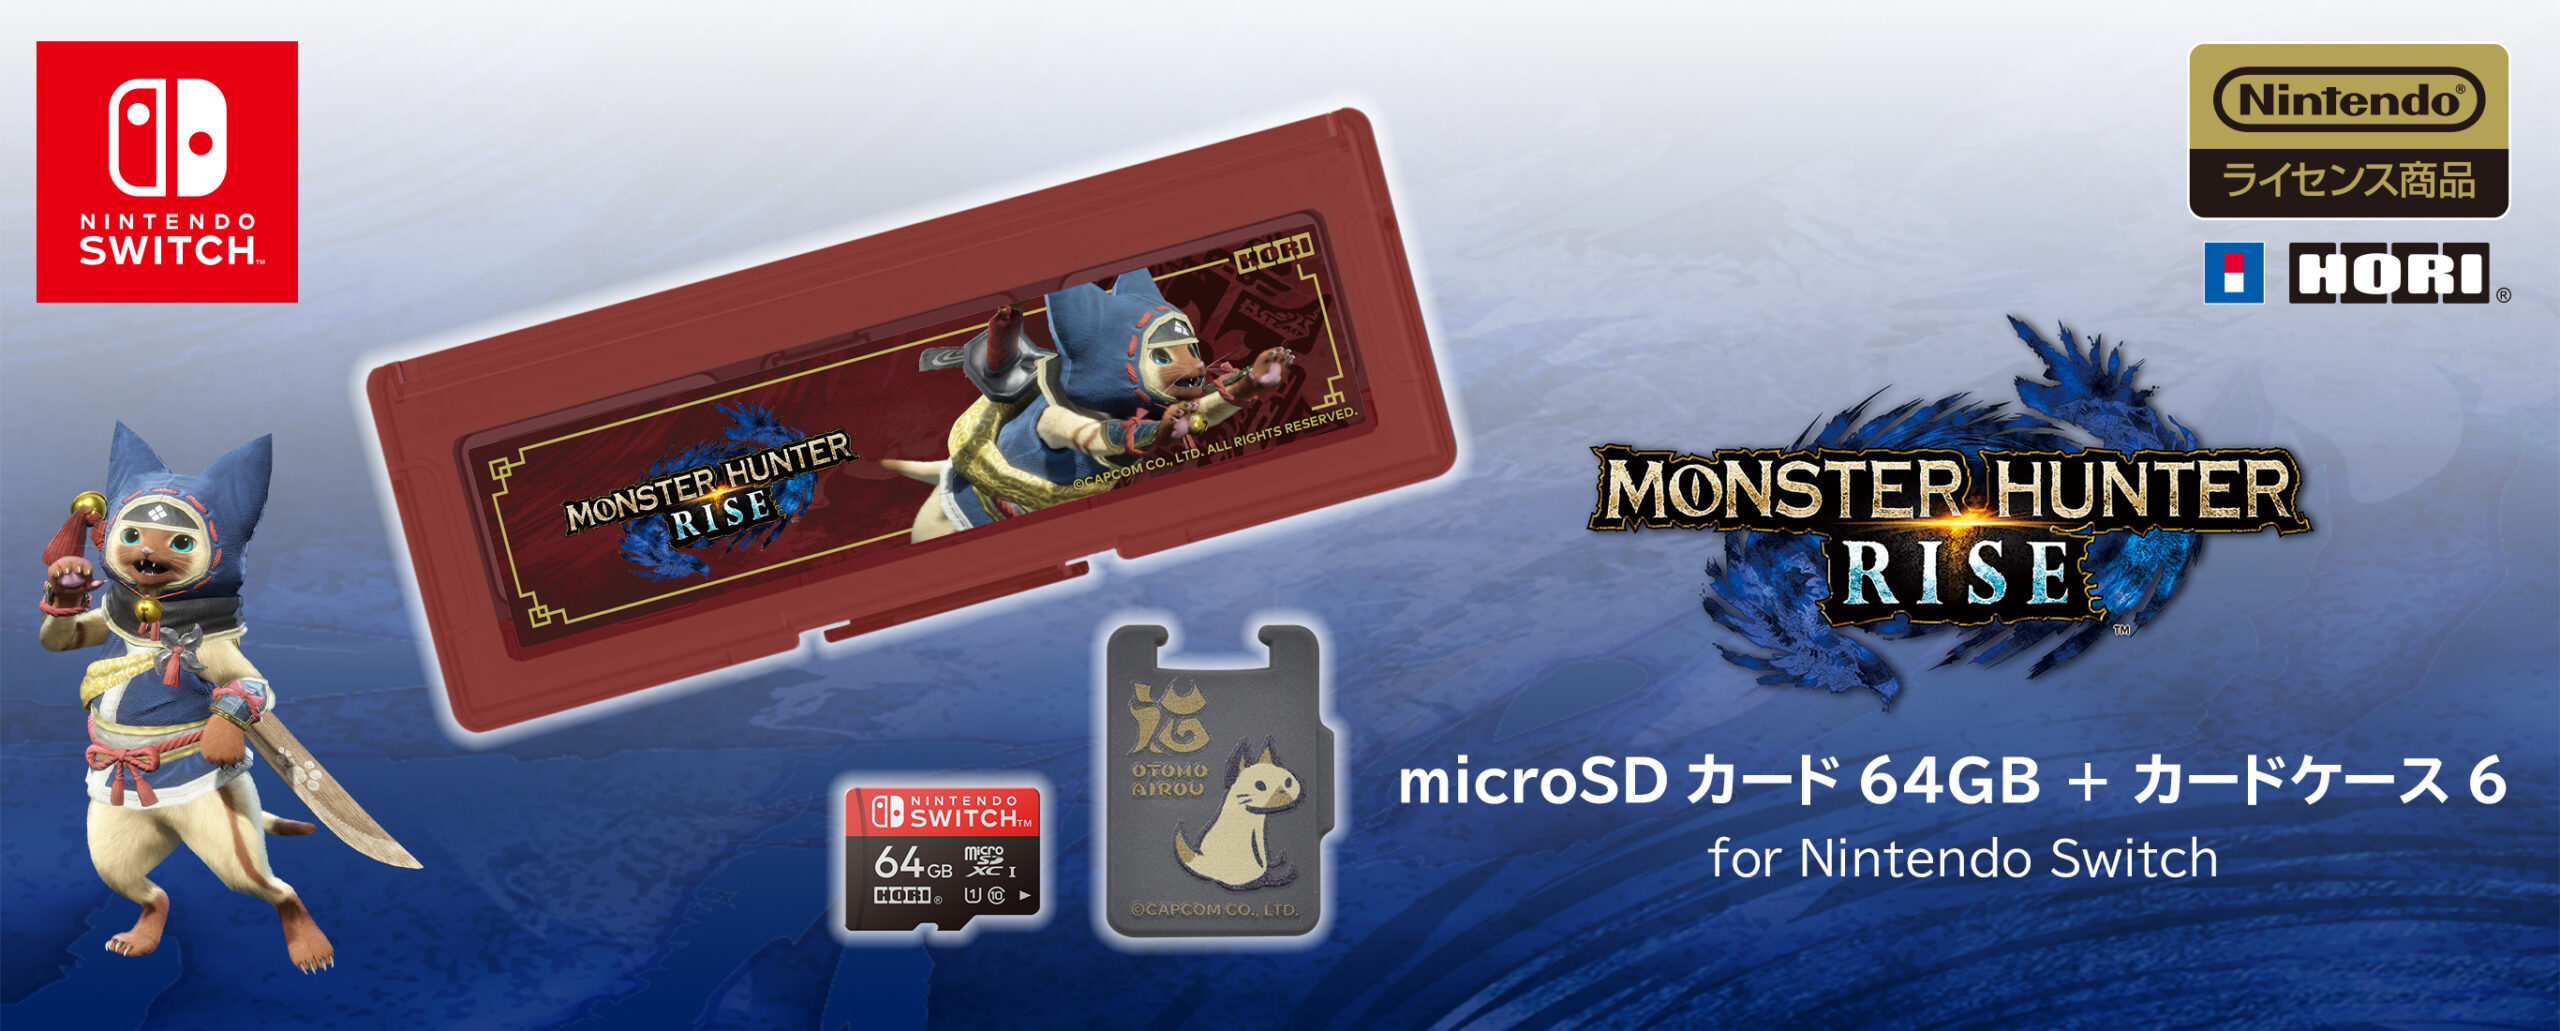 株式会社 HORI | モンスターハンターライズ microSDカード64GB + ...